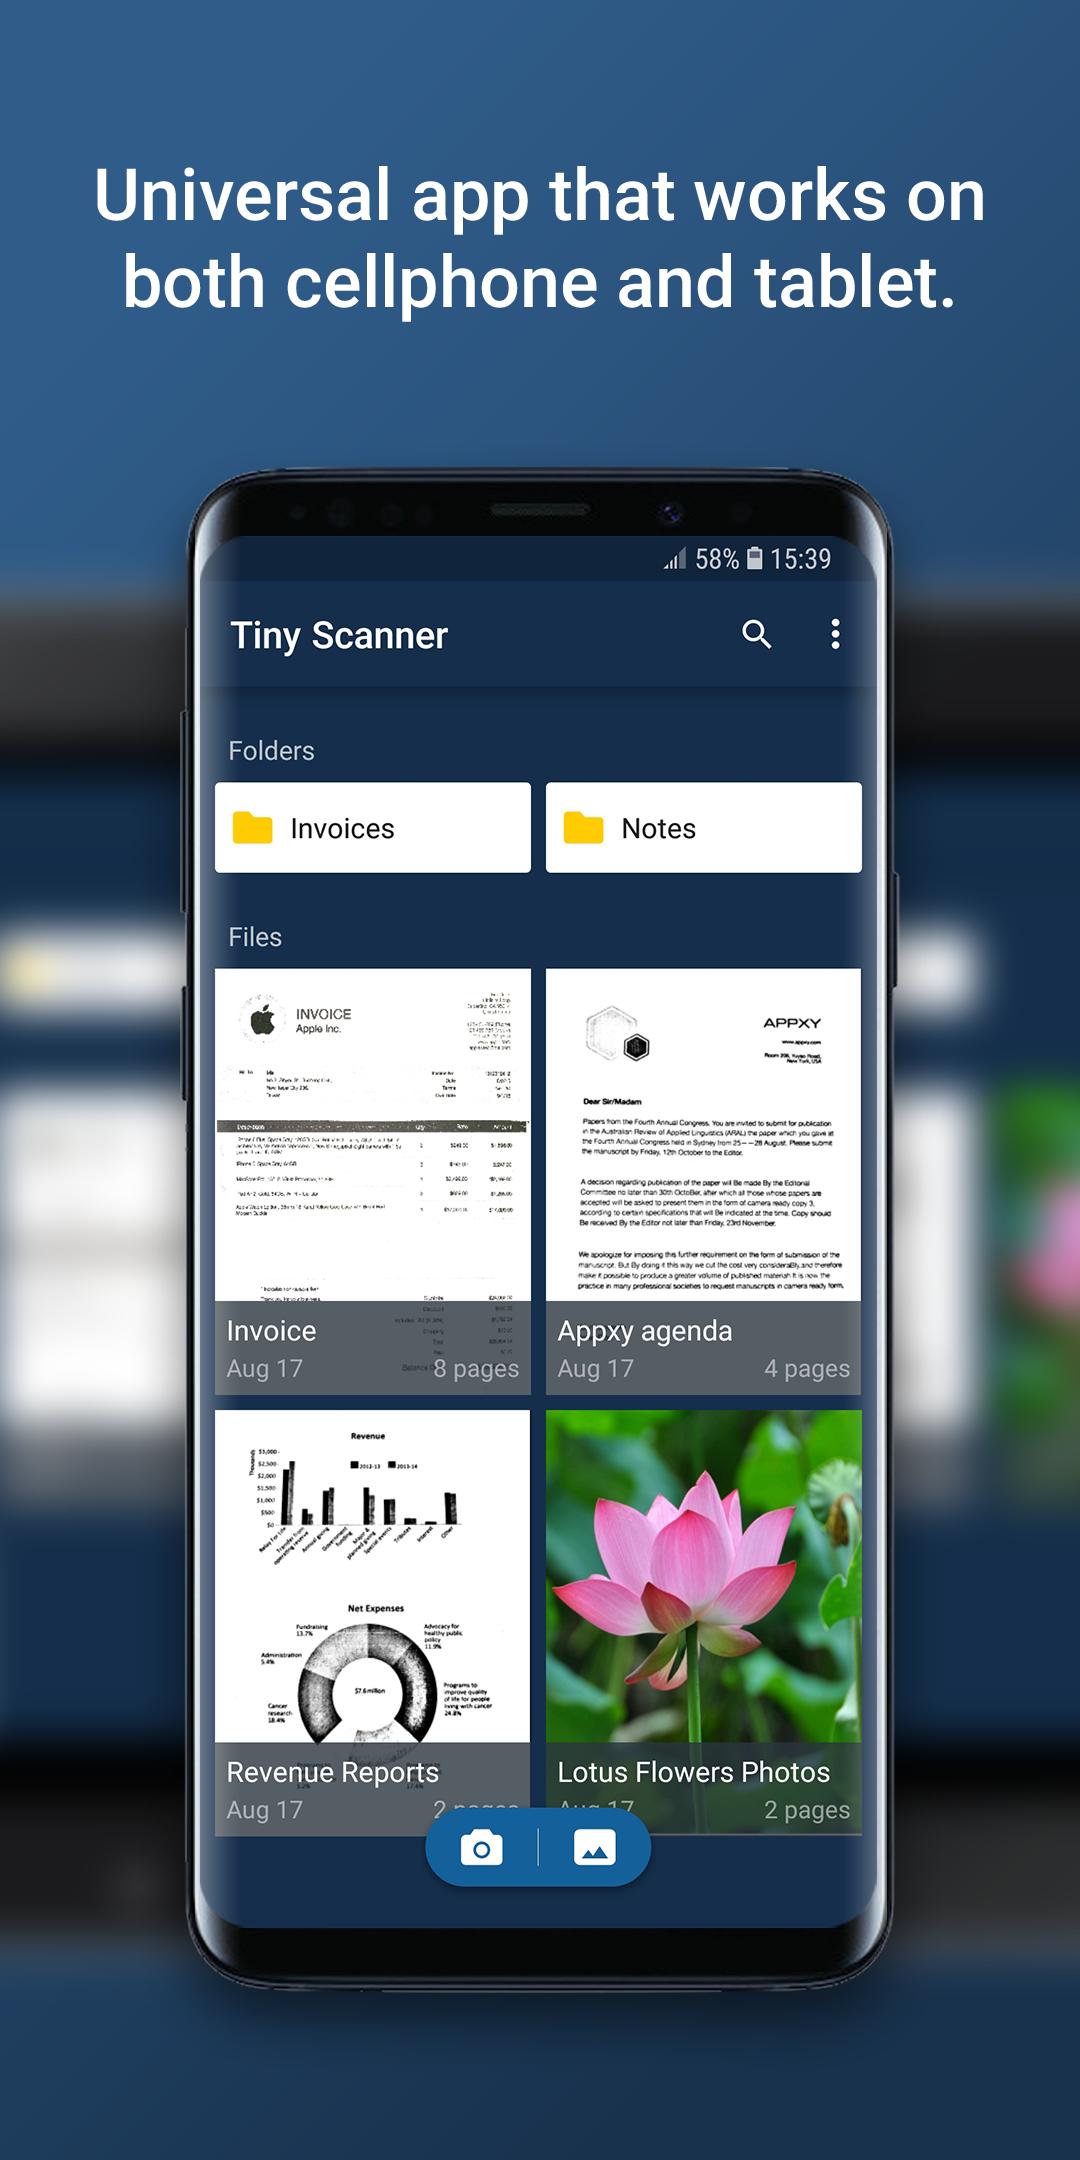 Tiny Scanner - PDF Scanner App